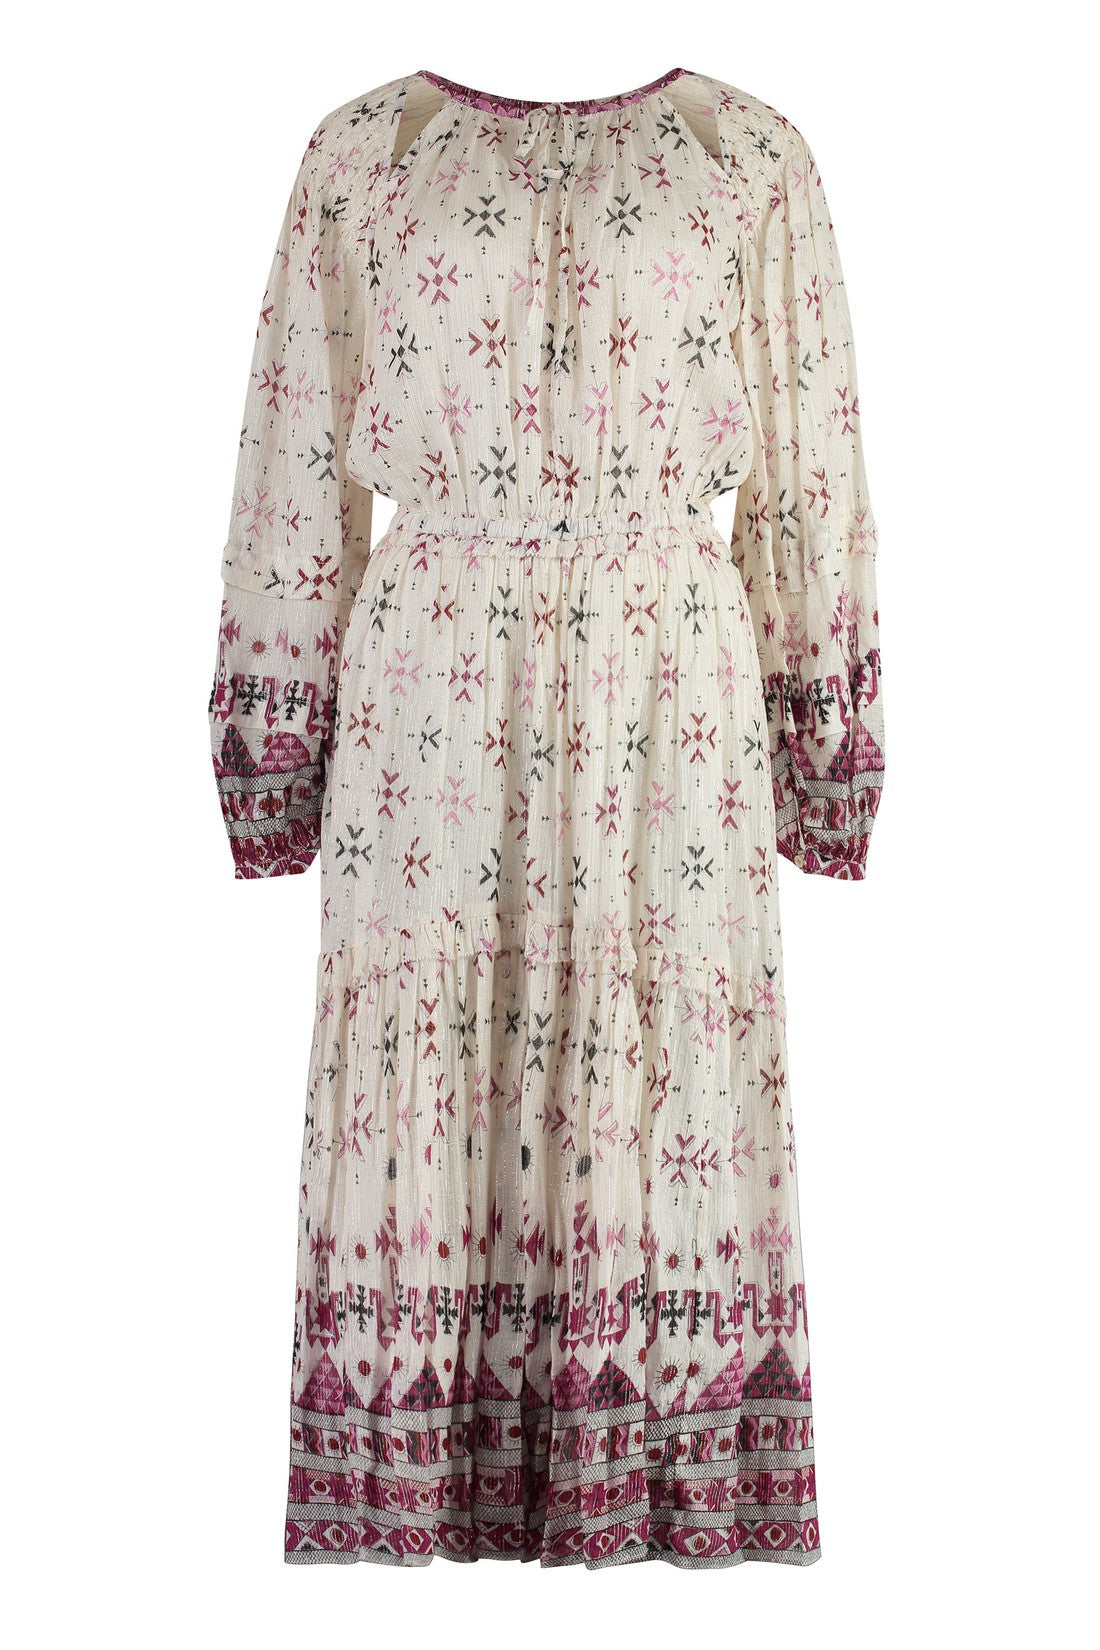 Isabel Marant Étoile-OUTLET-SALE-Fratela Printed cotton dress-ARCHIVIST